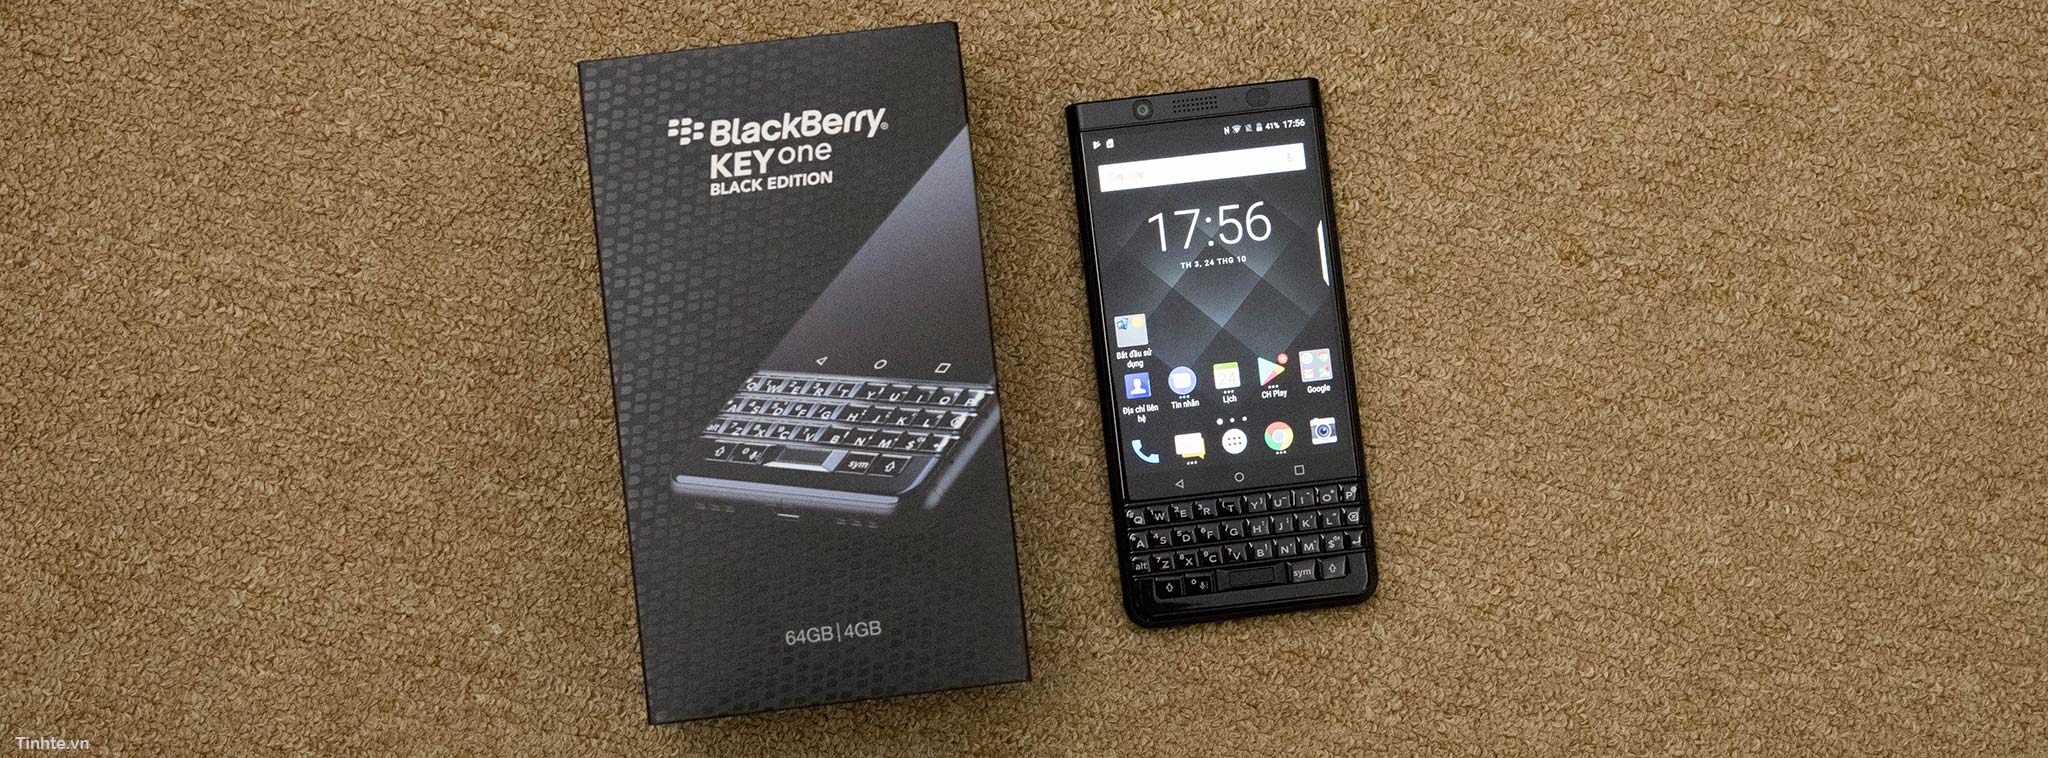 Tổng hợp  Hình nền cho BlackBerry Keyone  hình nền trời xanh cho các bản  BlackBerry